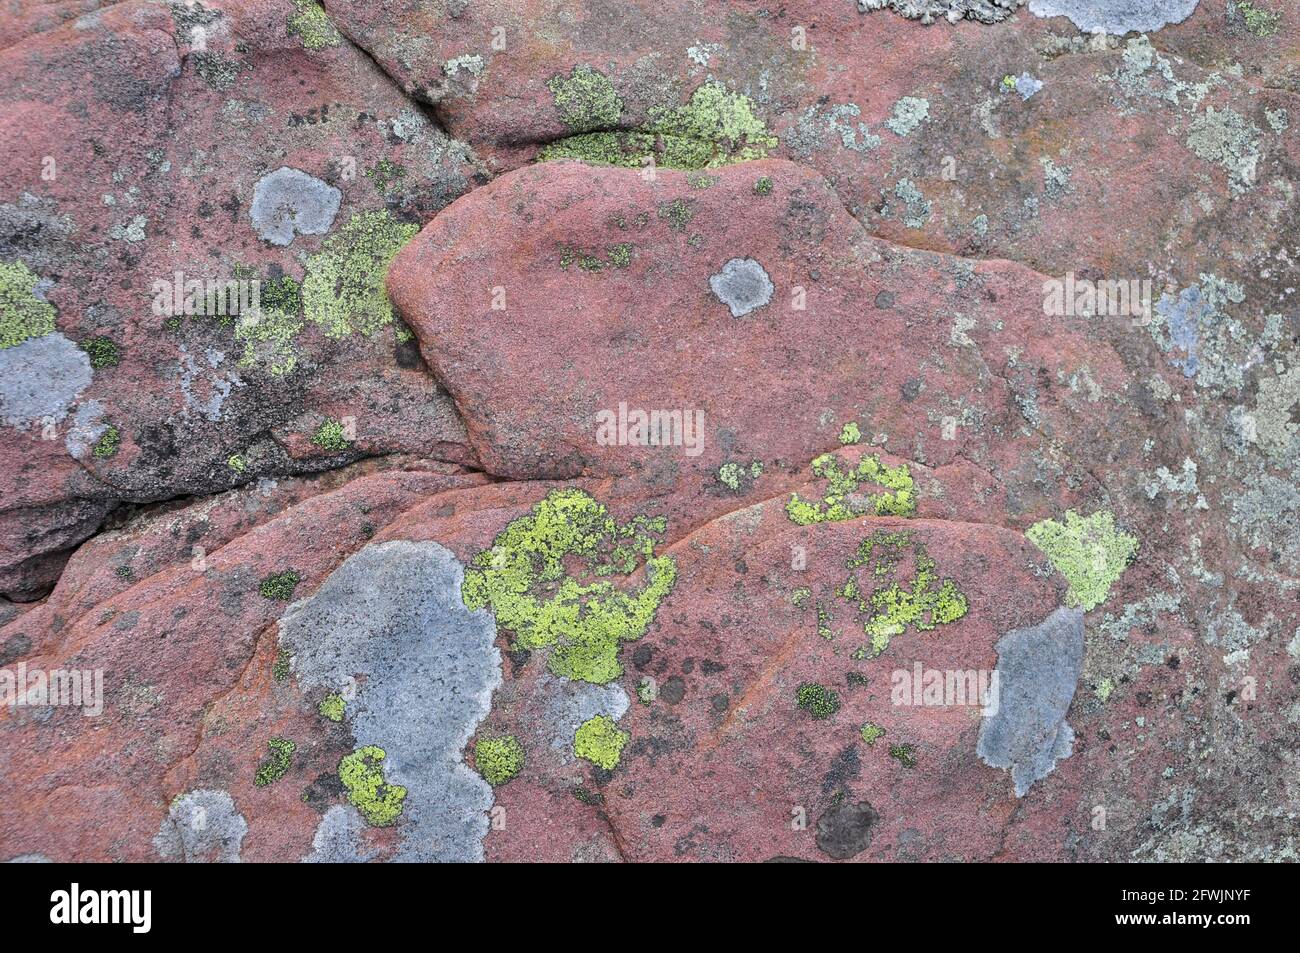 Llichen couvrait un vieux rocher de grès rouge sur la montagne au-dessus Grottes de Dan-yr-Ogox dans les Black Mountains, au sud du pays de Galles, au Royaume-Uni Banque D'Images